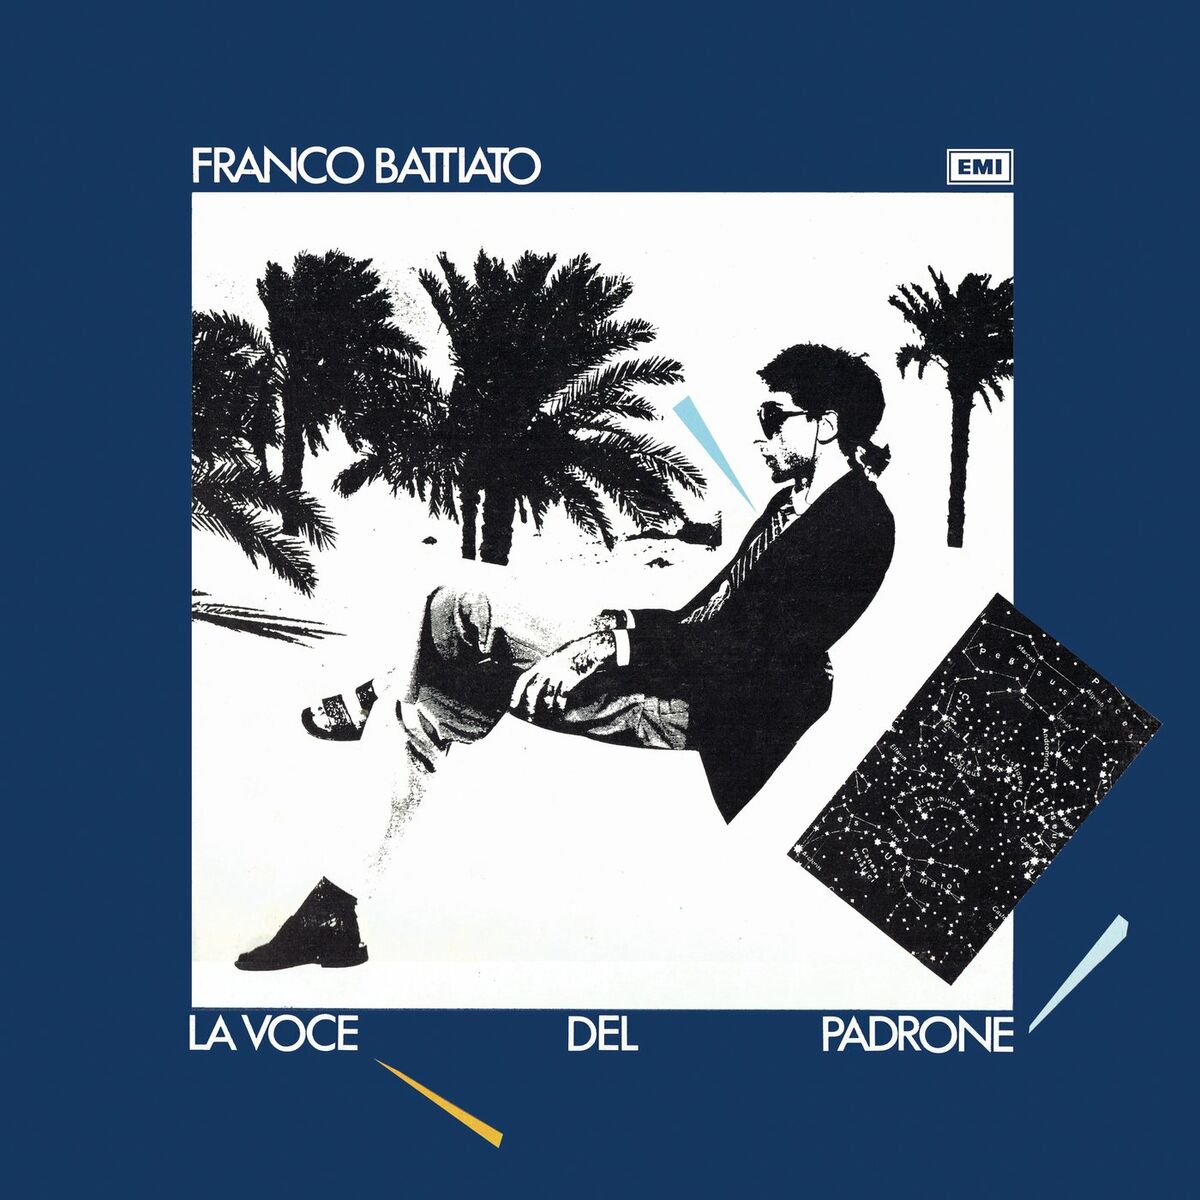 Franco Battiato: albums